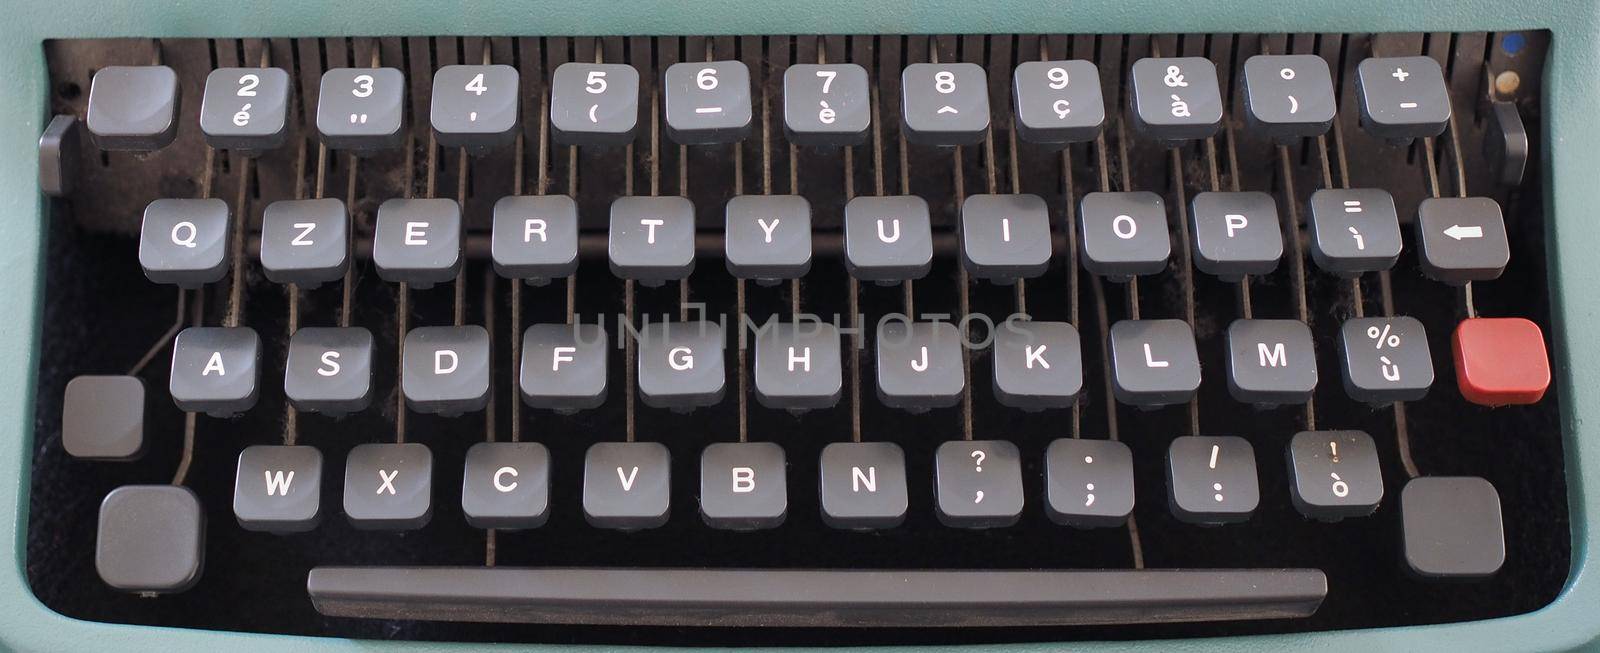 vintage typewriter keyboard by claudiodivizia